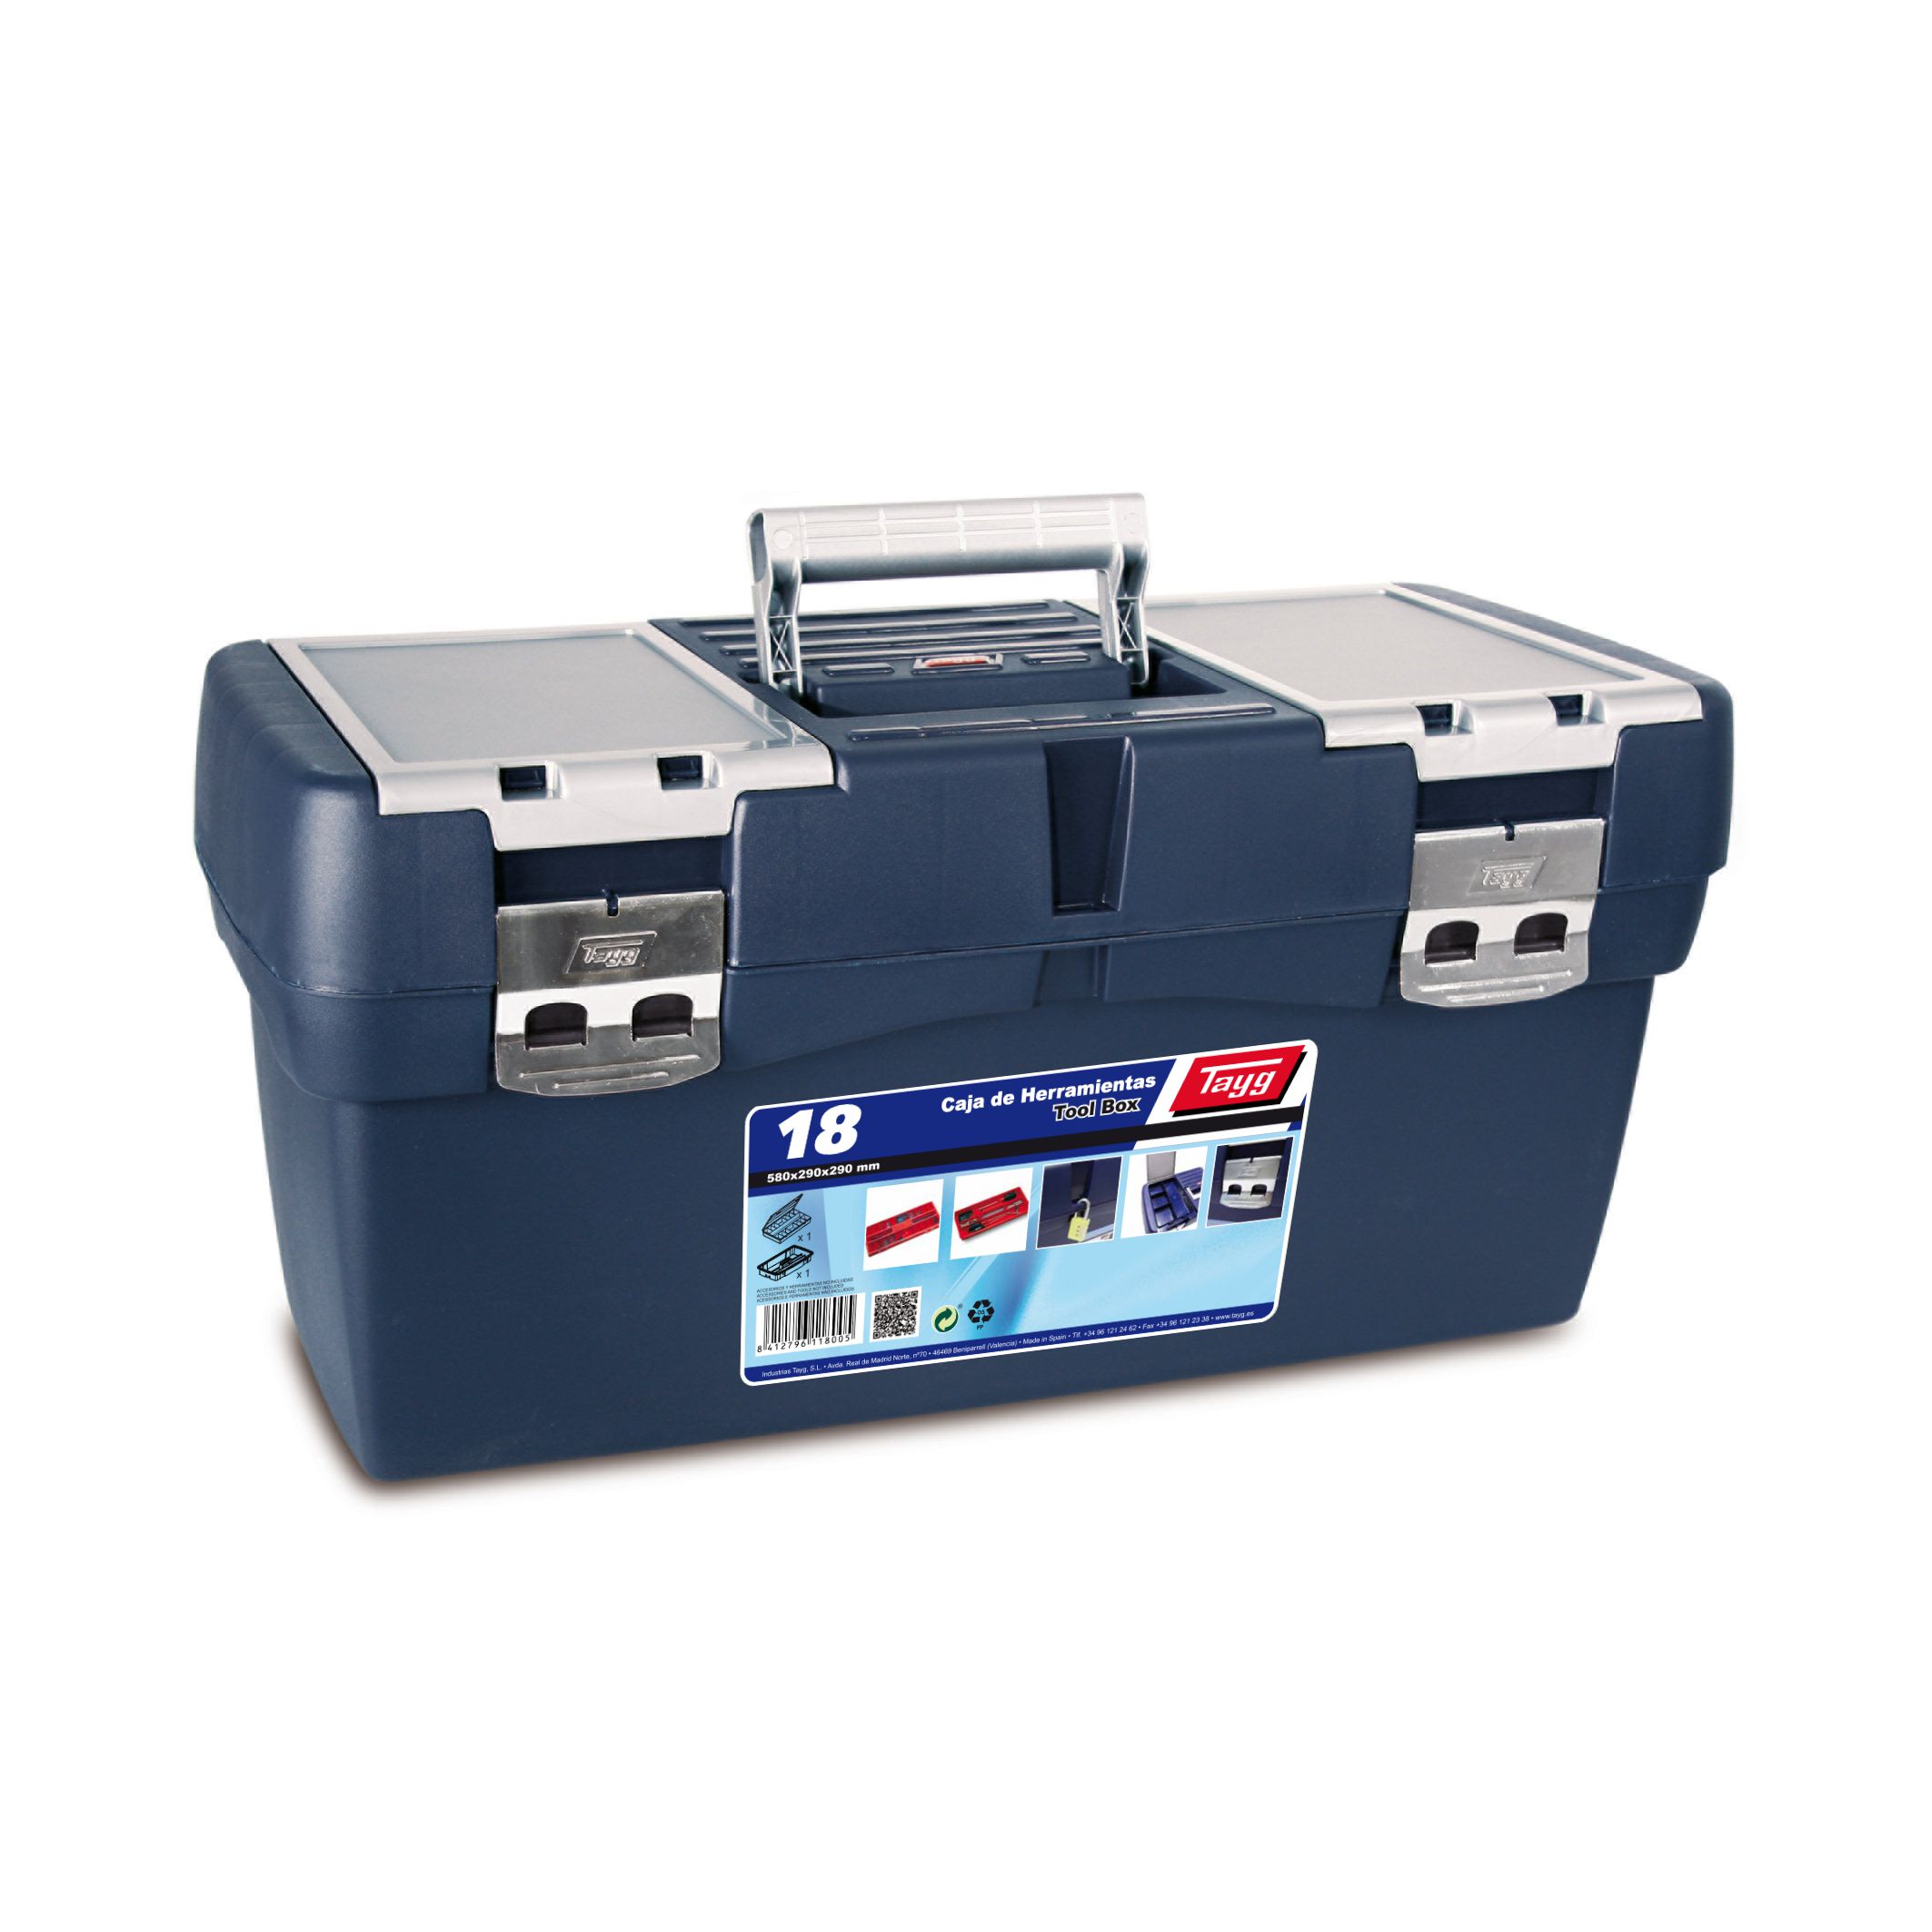 Ящик пластиковий для інструментів Tayg Box 18 Caja htas, 58х29х29 см, синій (118005) - фото 1